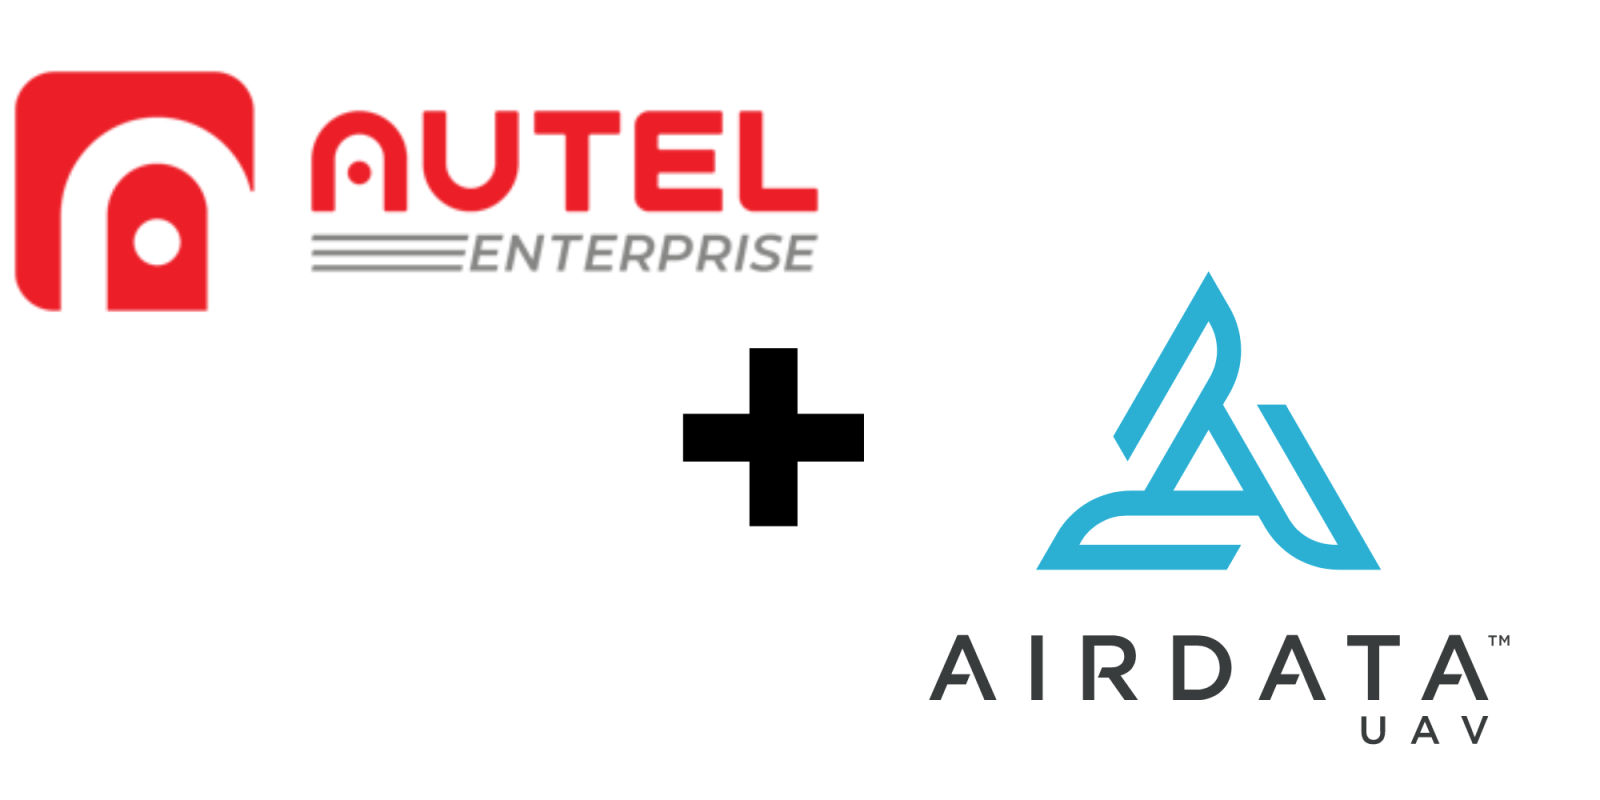 Autel and AirData